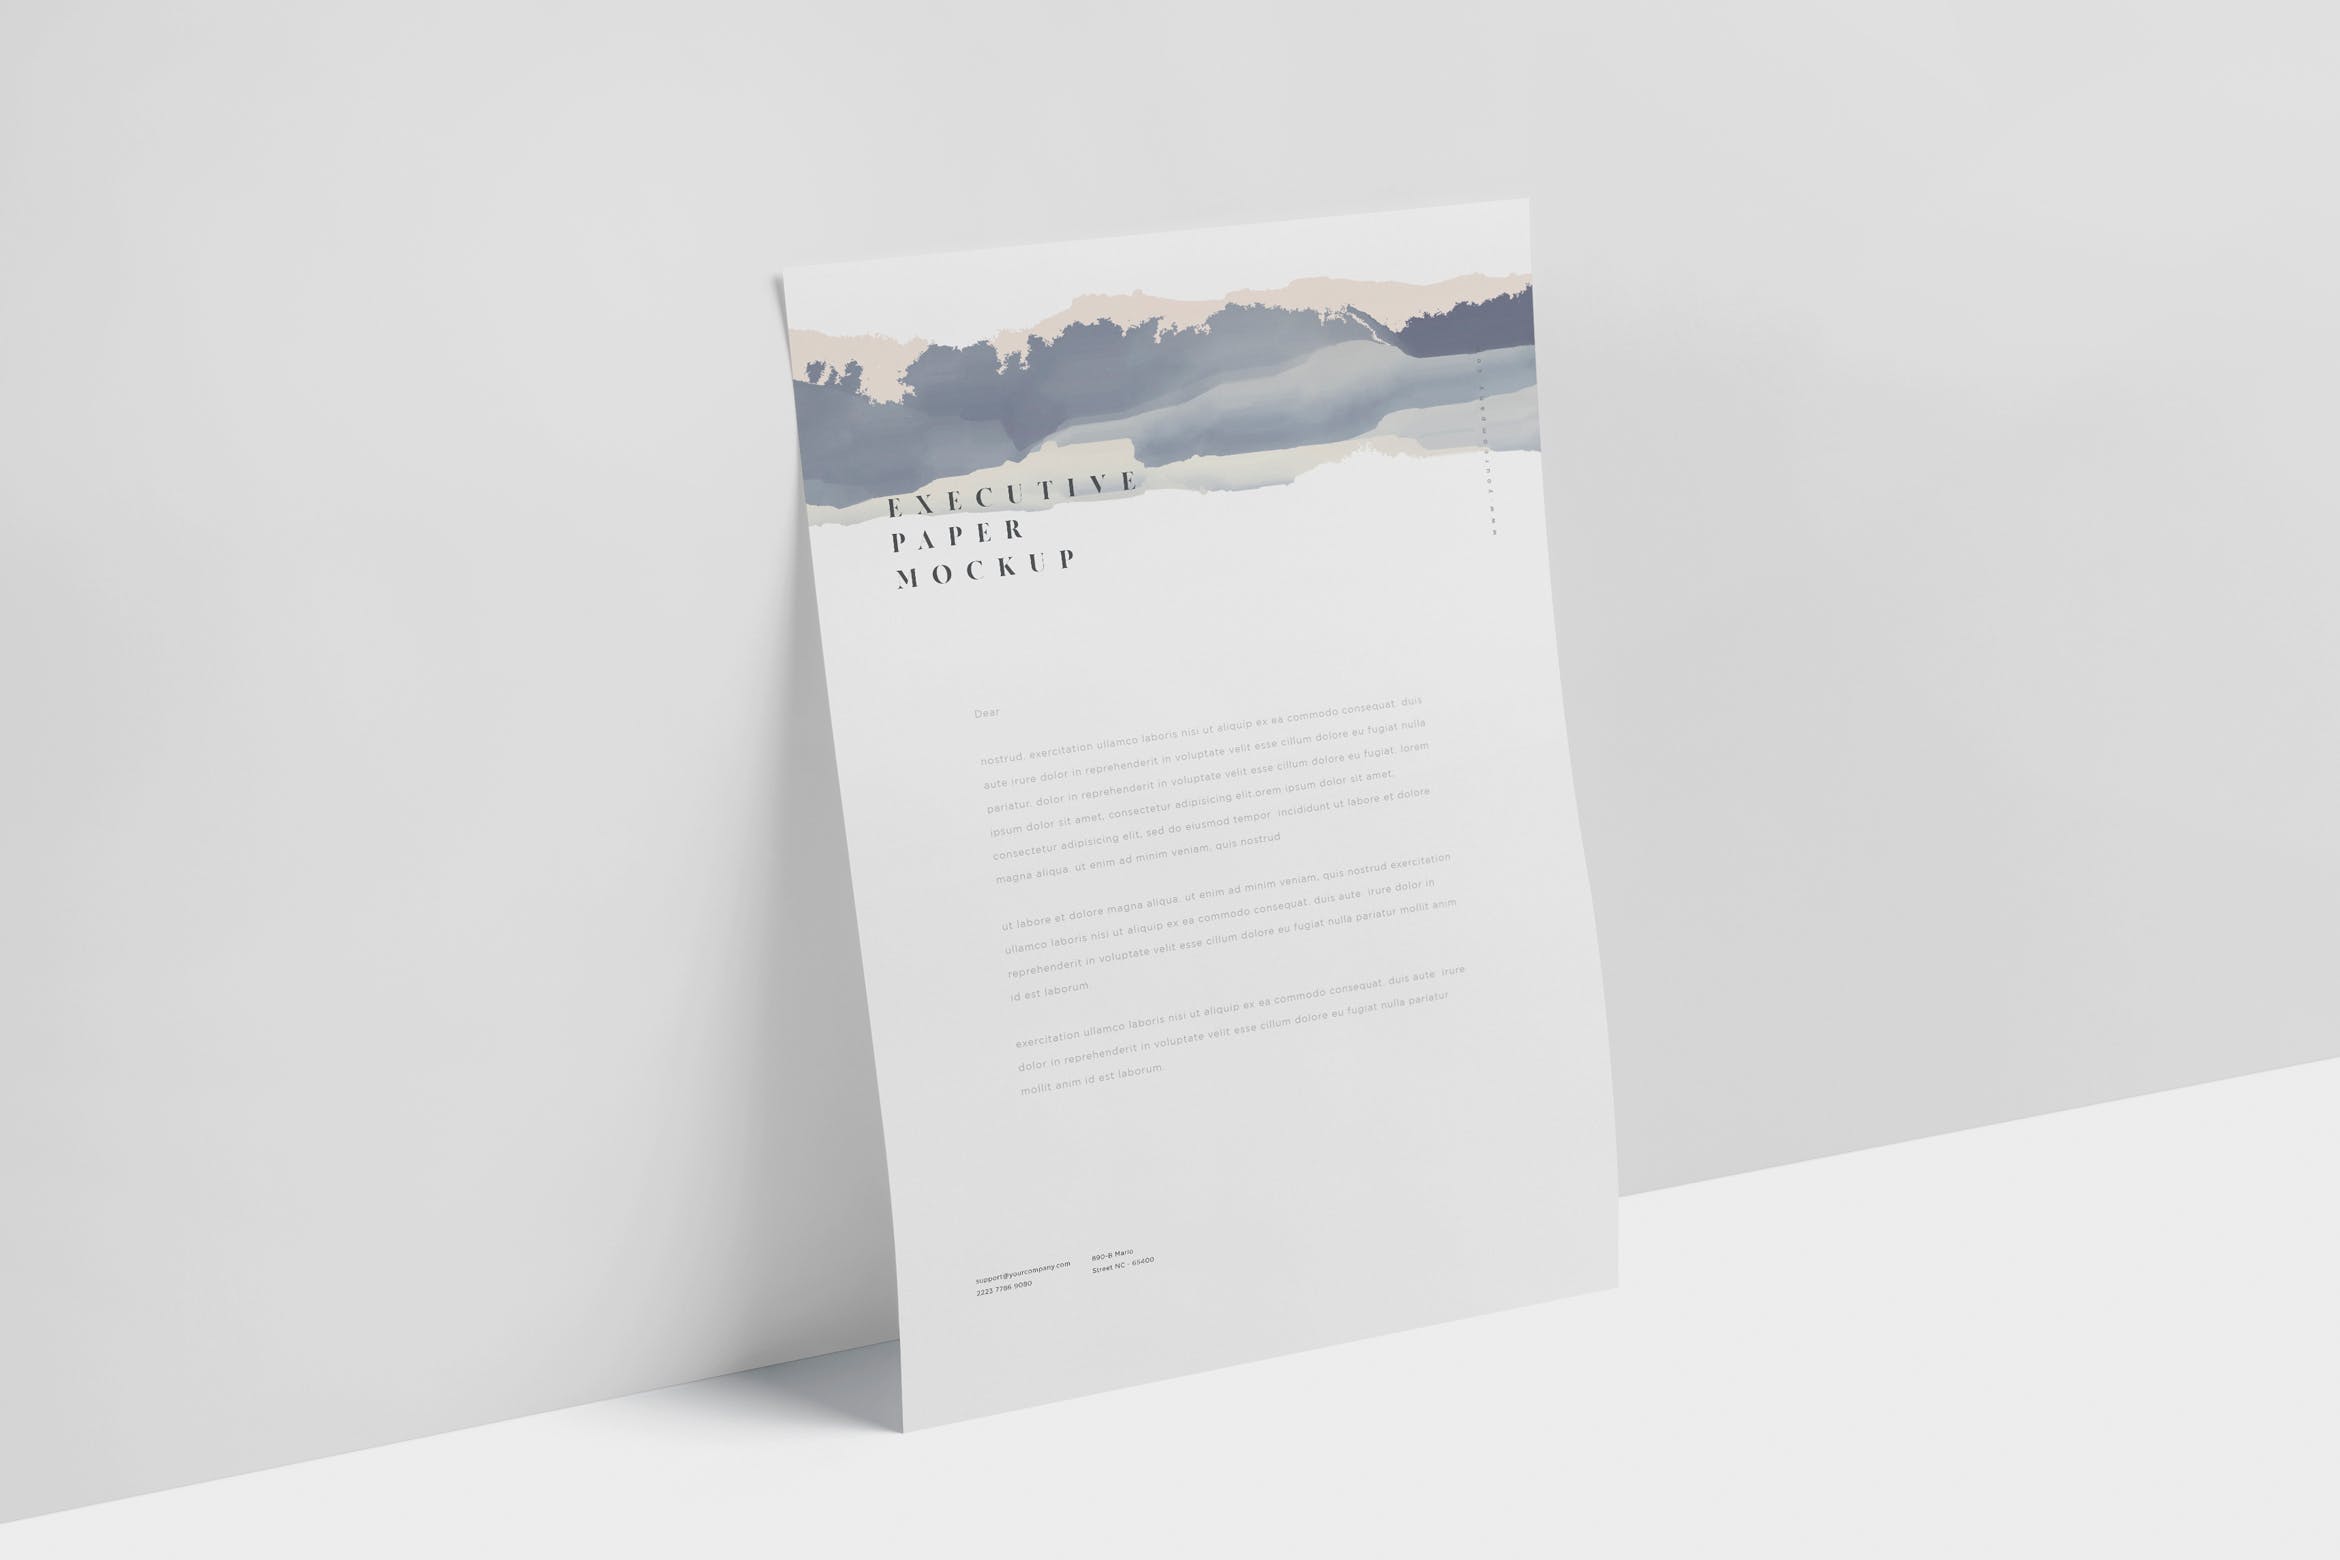 企业宣传单张设计效果图样机第一素材精选 Executive Paper Mockup – 7×10 Inch Size插图